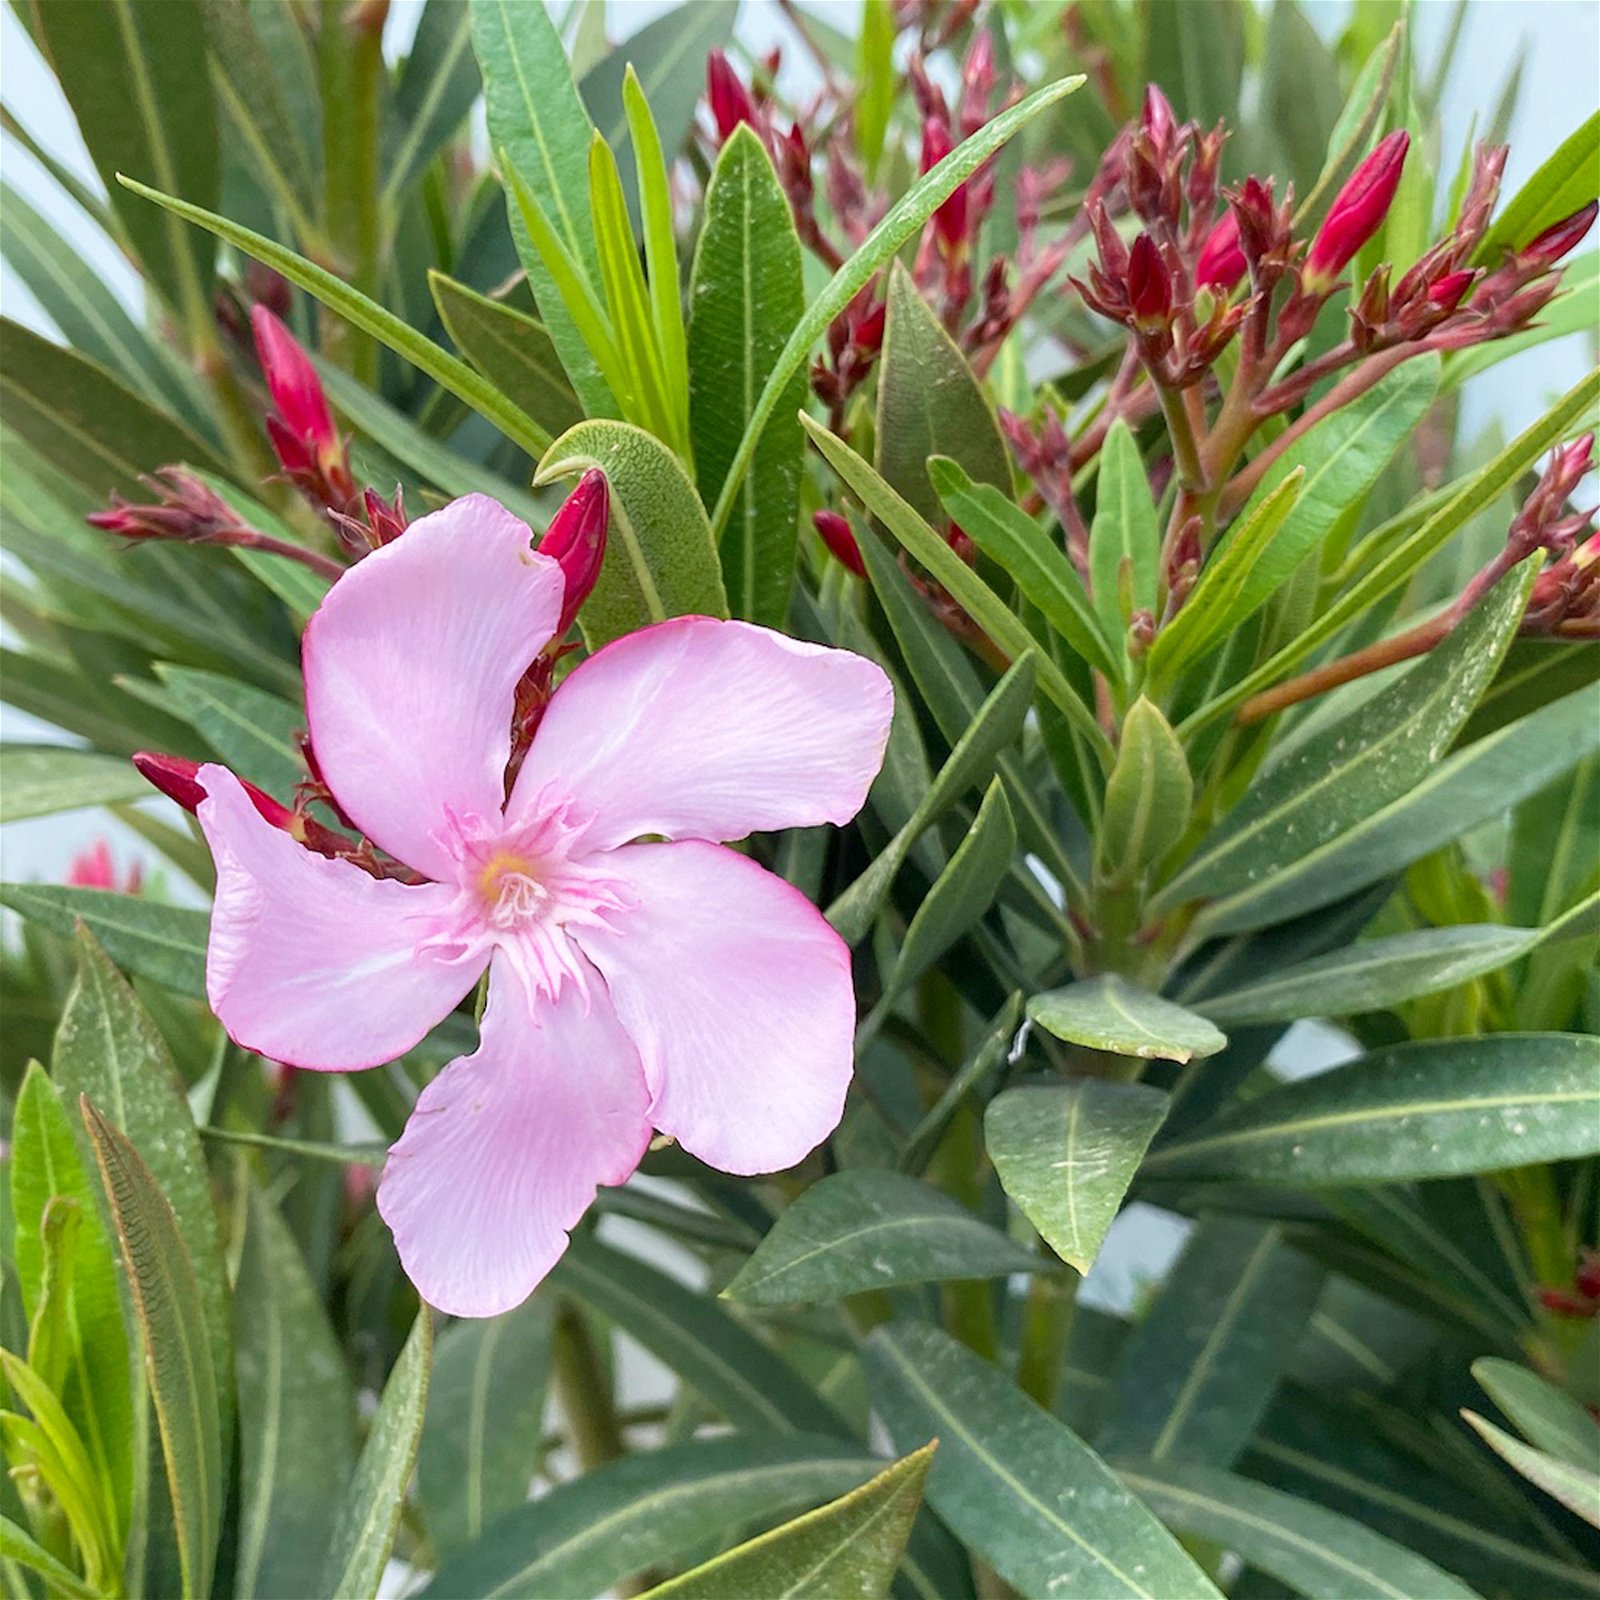 Oleander, Farbe nach Verfügbarkeit, Busch, Topf-Ø 33 cm, Höhe ca. 100 cm